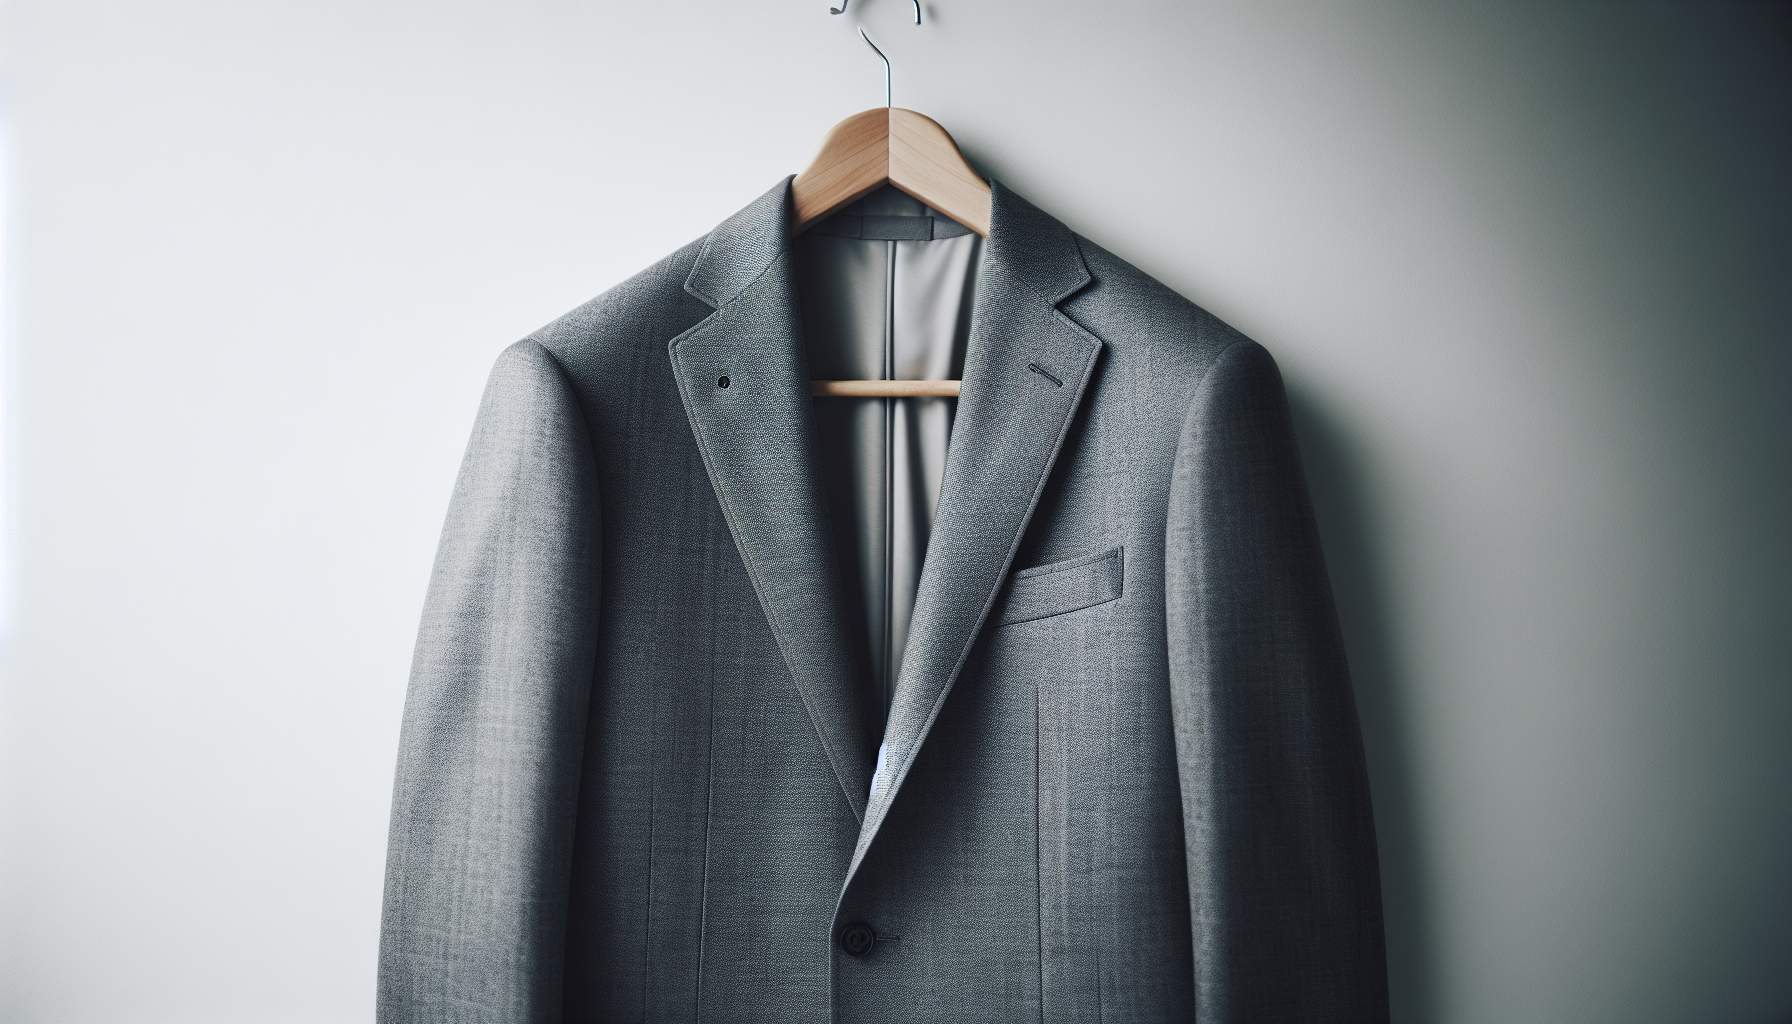 Veste costume grise homme: le guide complet du style formel masculin